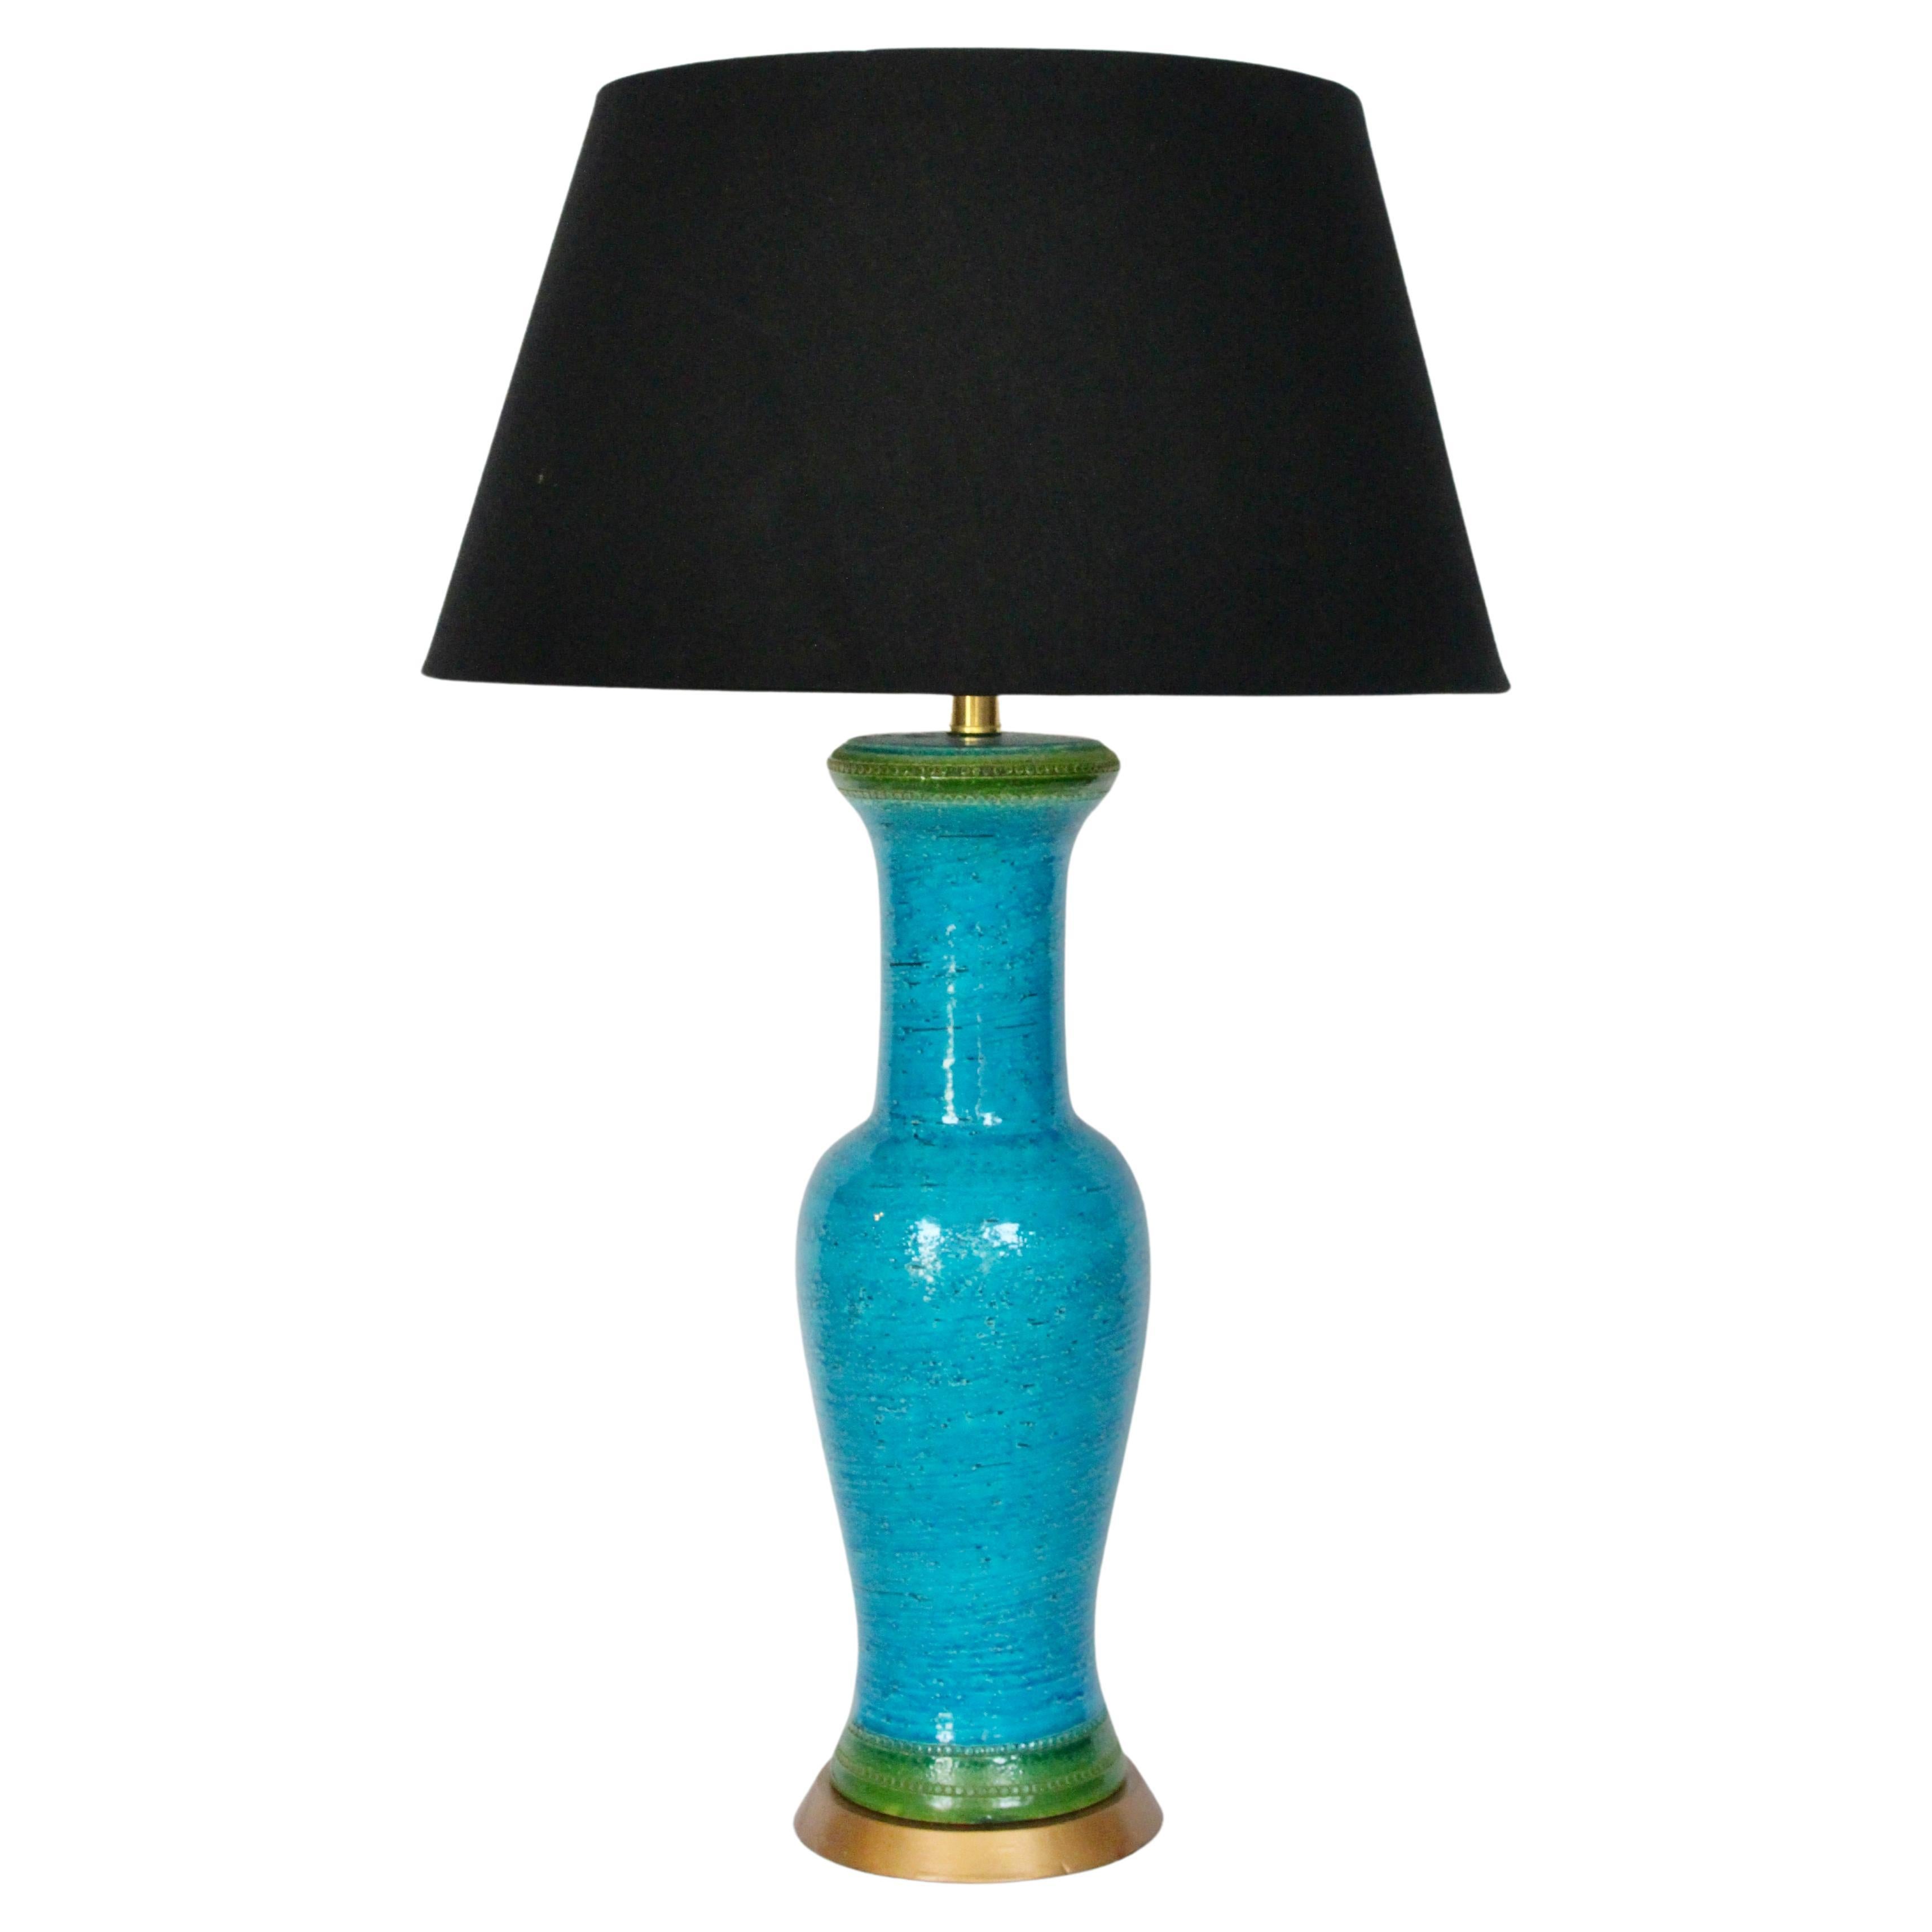 Importante lampe de table Aldo Londi Bitossi à rayures turquoise et vertes, années 1950